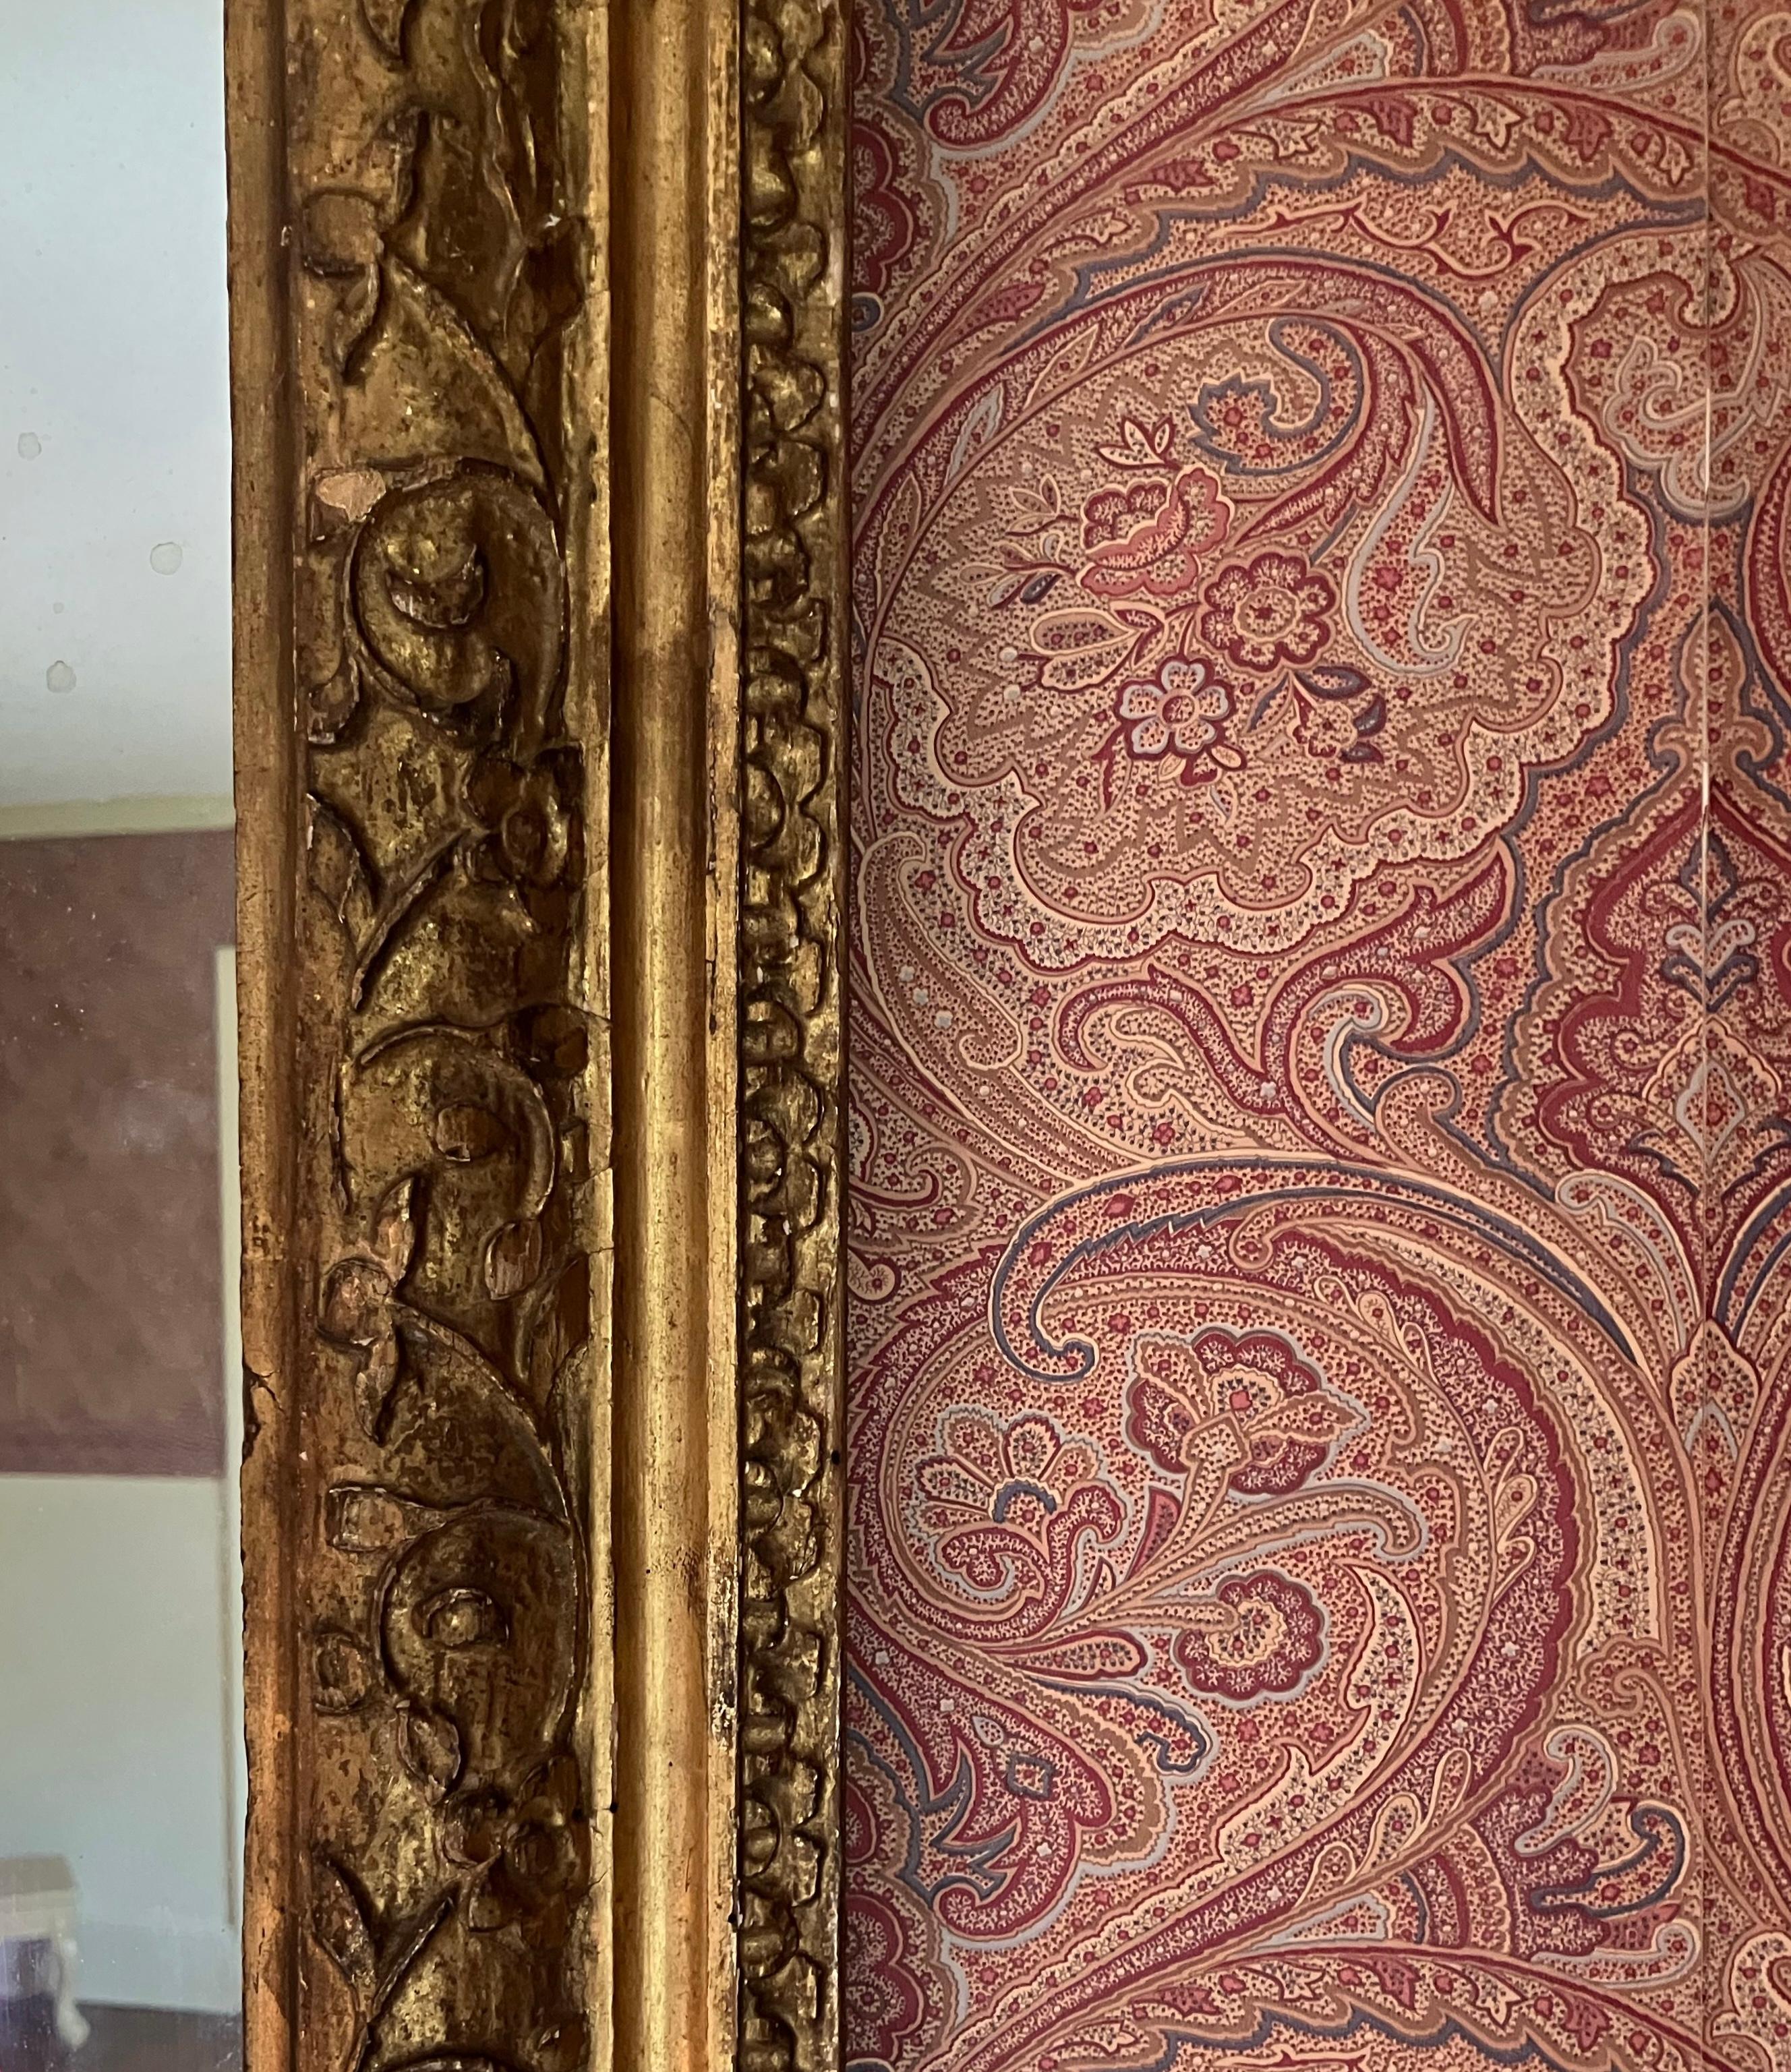 Großer vergoldeter geschnitzter Holzspiegel. Ausgedehnter Spiegel aus sanft mercuriertem Glas, eingefasst in einen mit Blättern beschnitzten und vergoldeten Rahmen aus antikem amerikanischen Holz. Vereinigte Staaten, um 1880. 

Abmessungen: 53,25